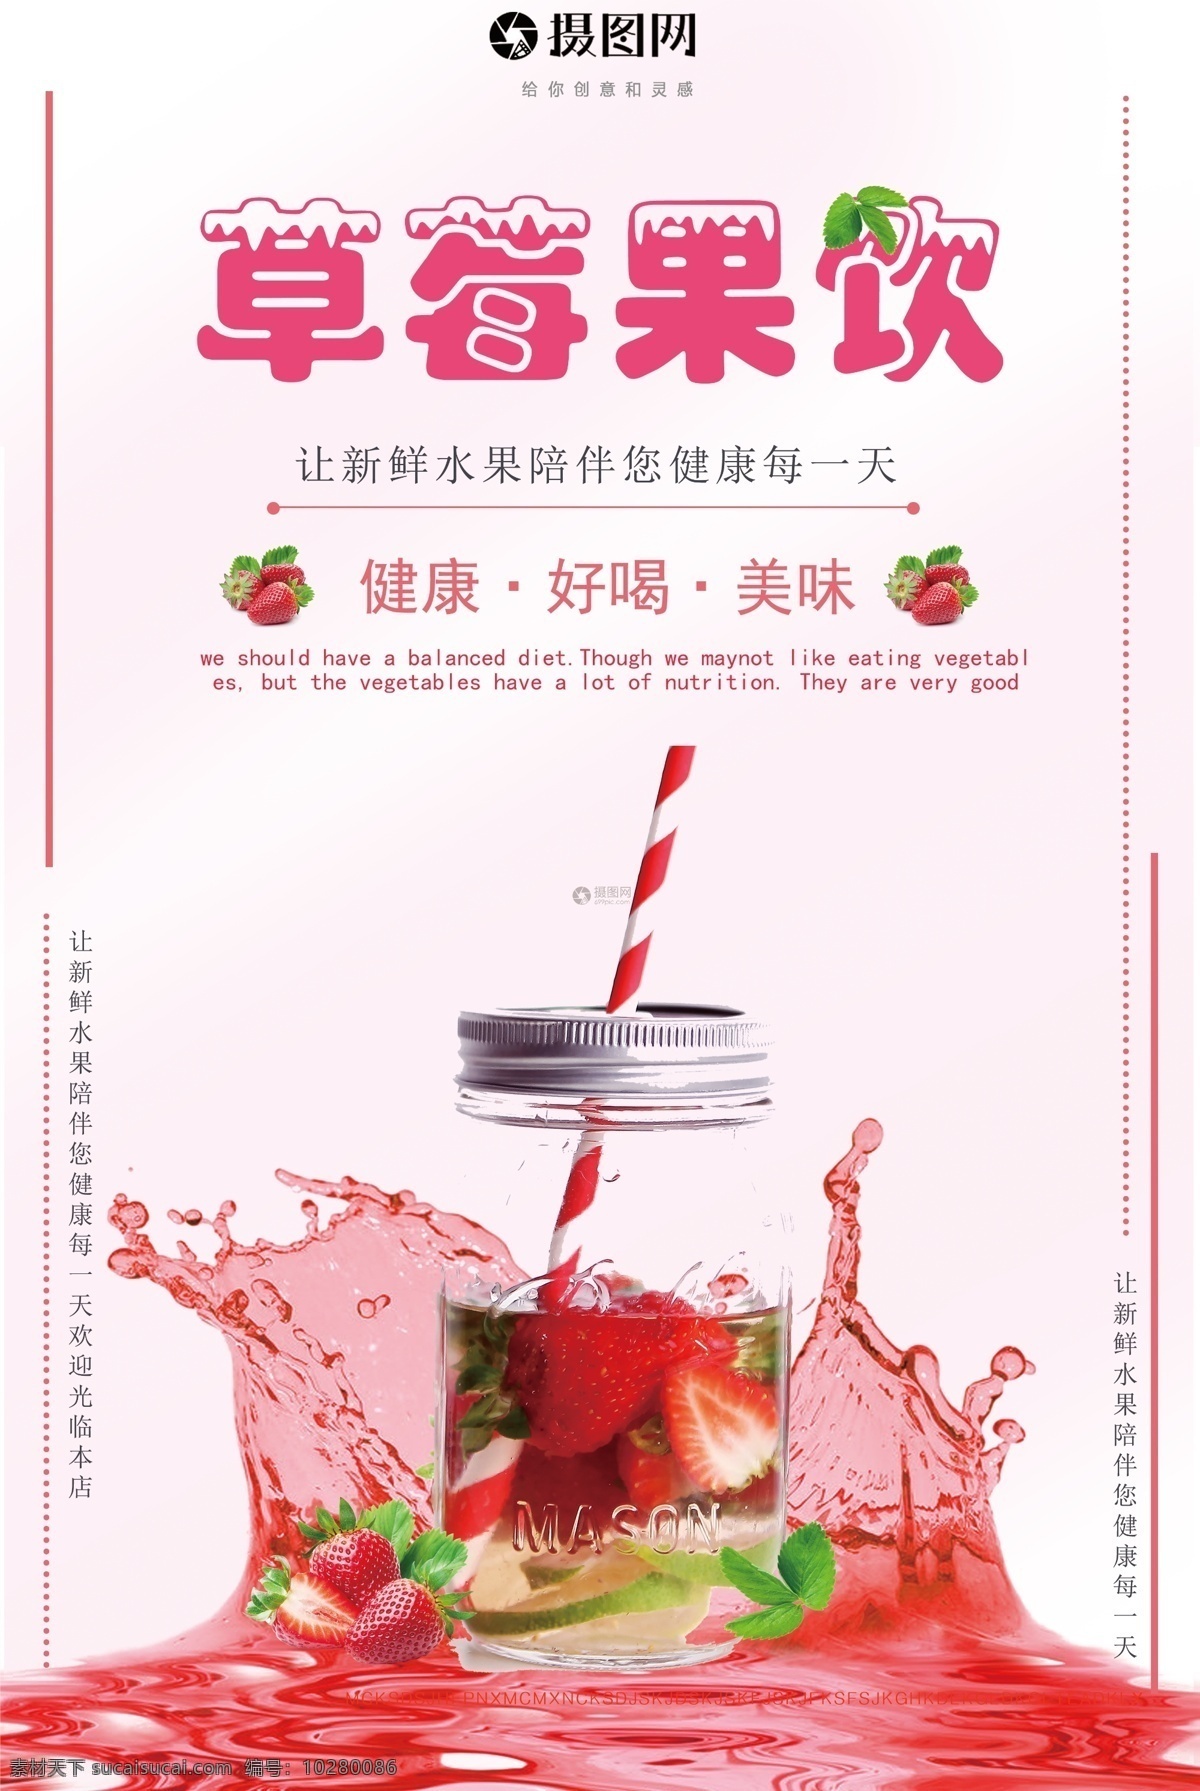 草莓果饮海报 草莓果饮 冰镇饮品 冷饮 夏天饮品 夏季 特饮 果汁 美食餐饮 水果饮料 海报